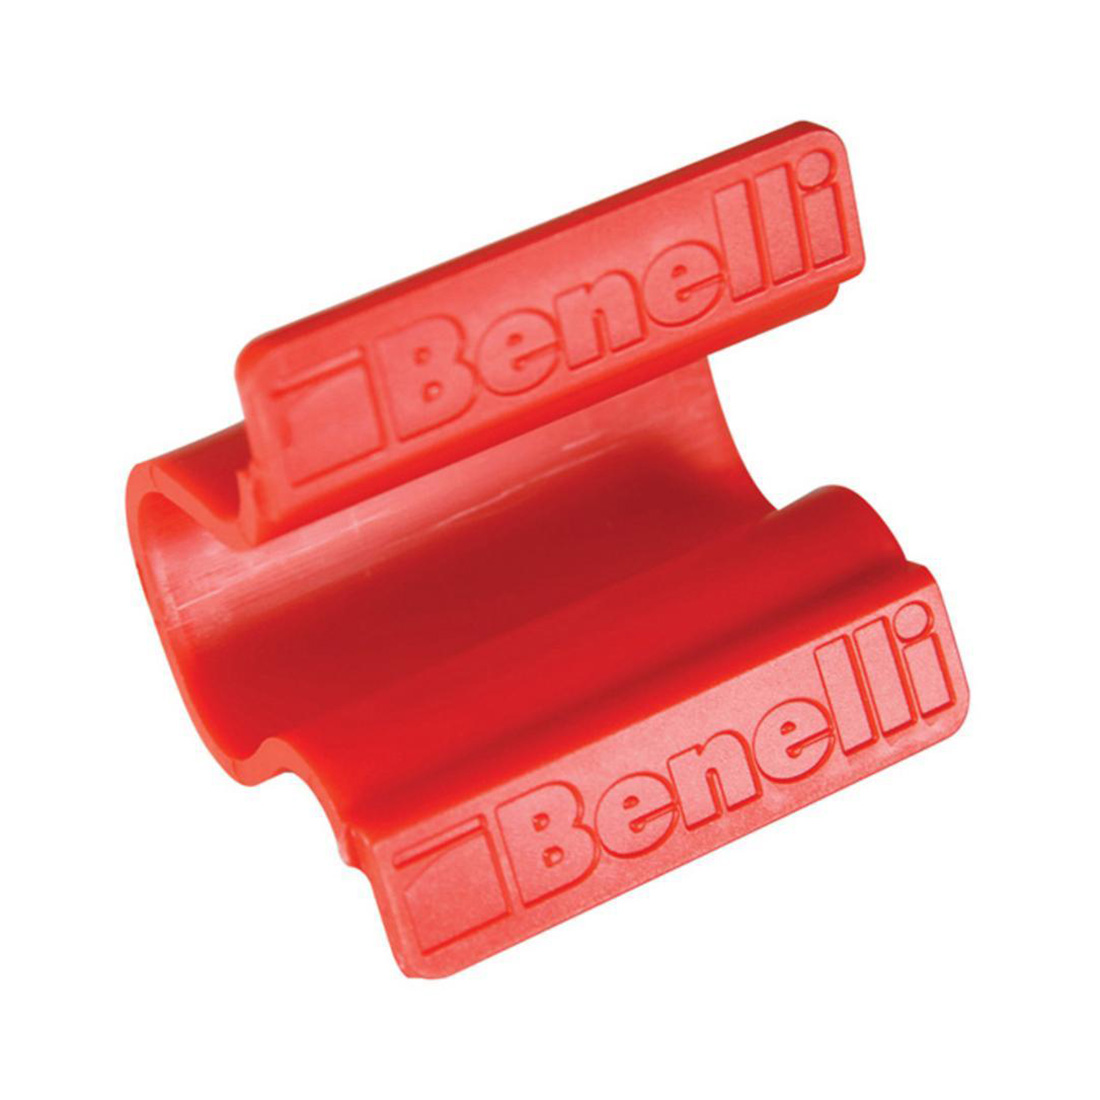 Benelli Auto Safety Clip